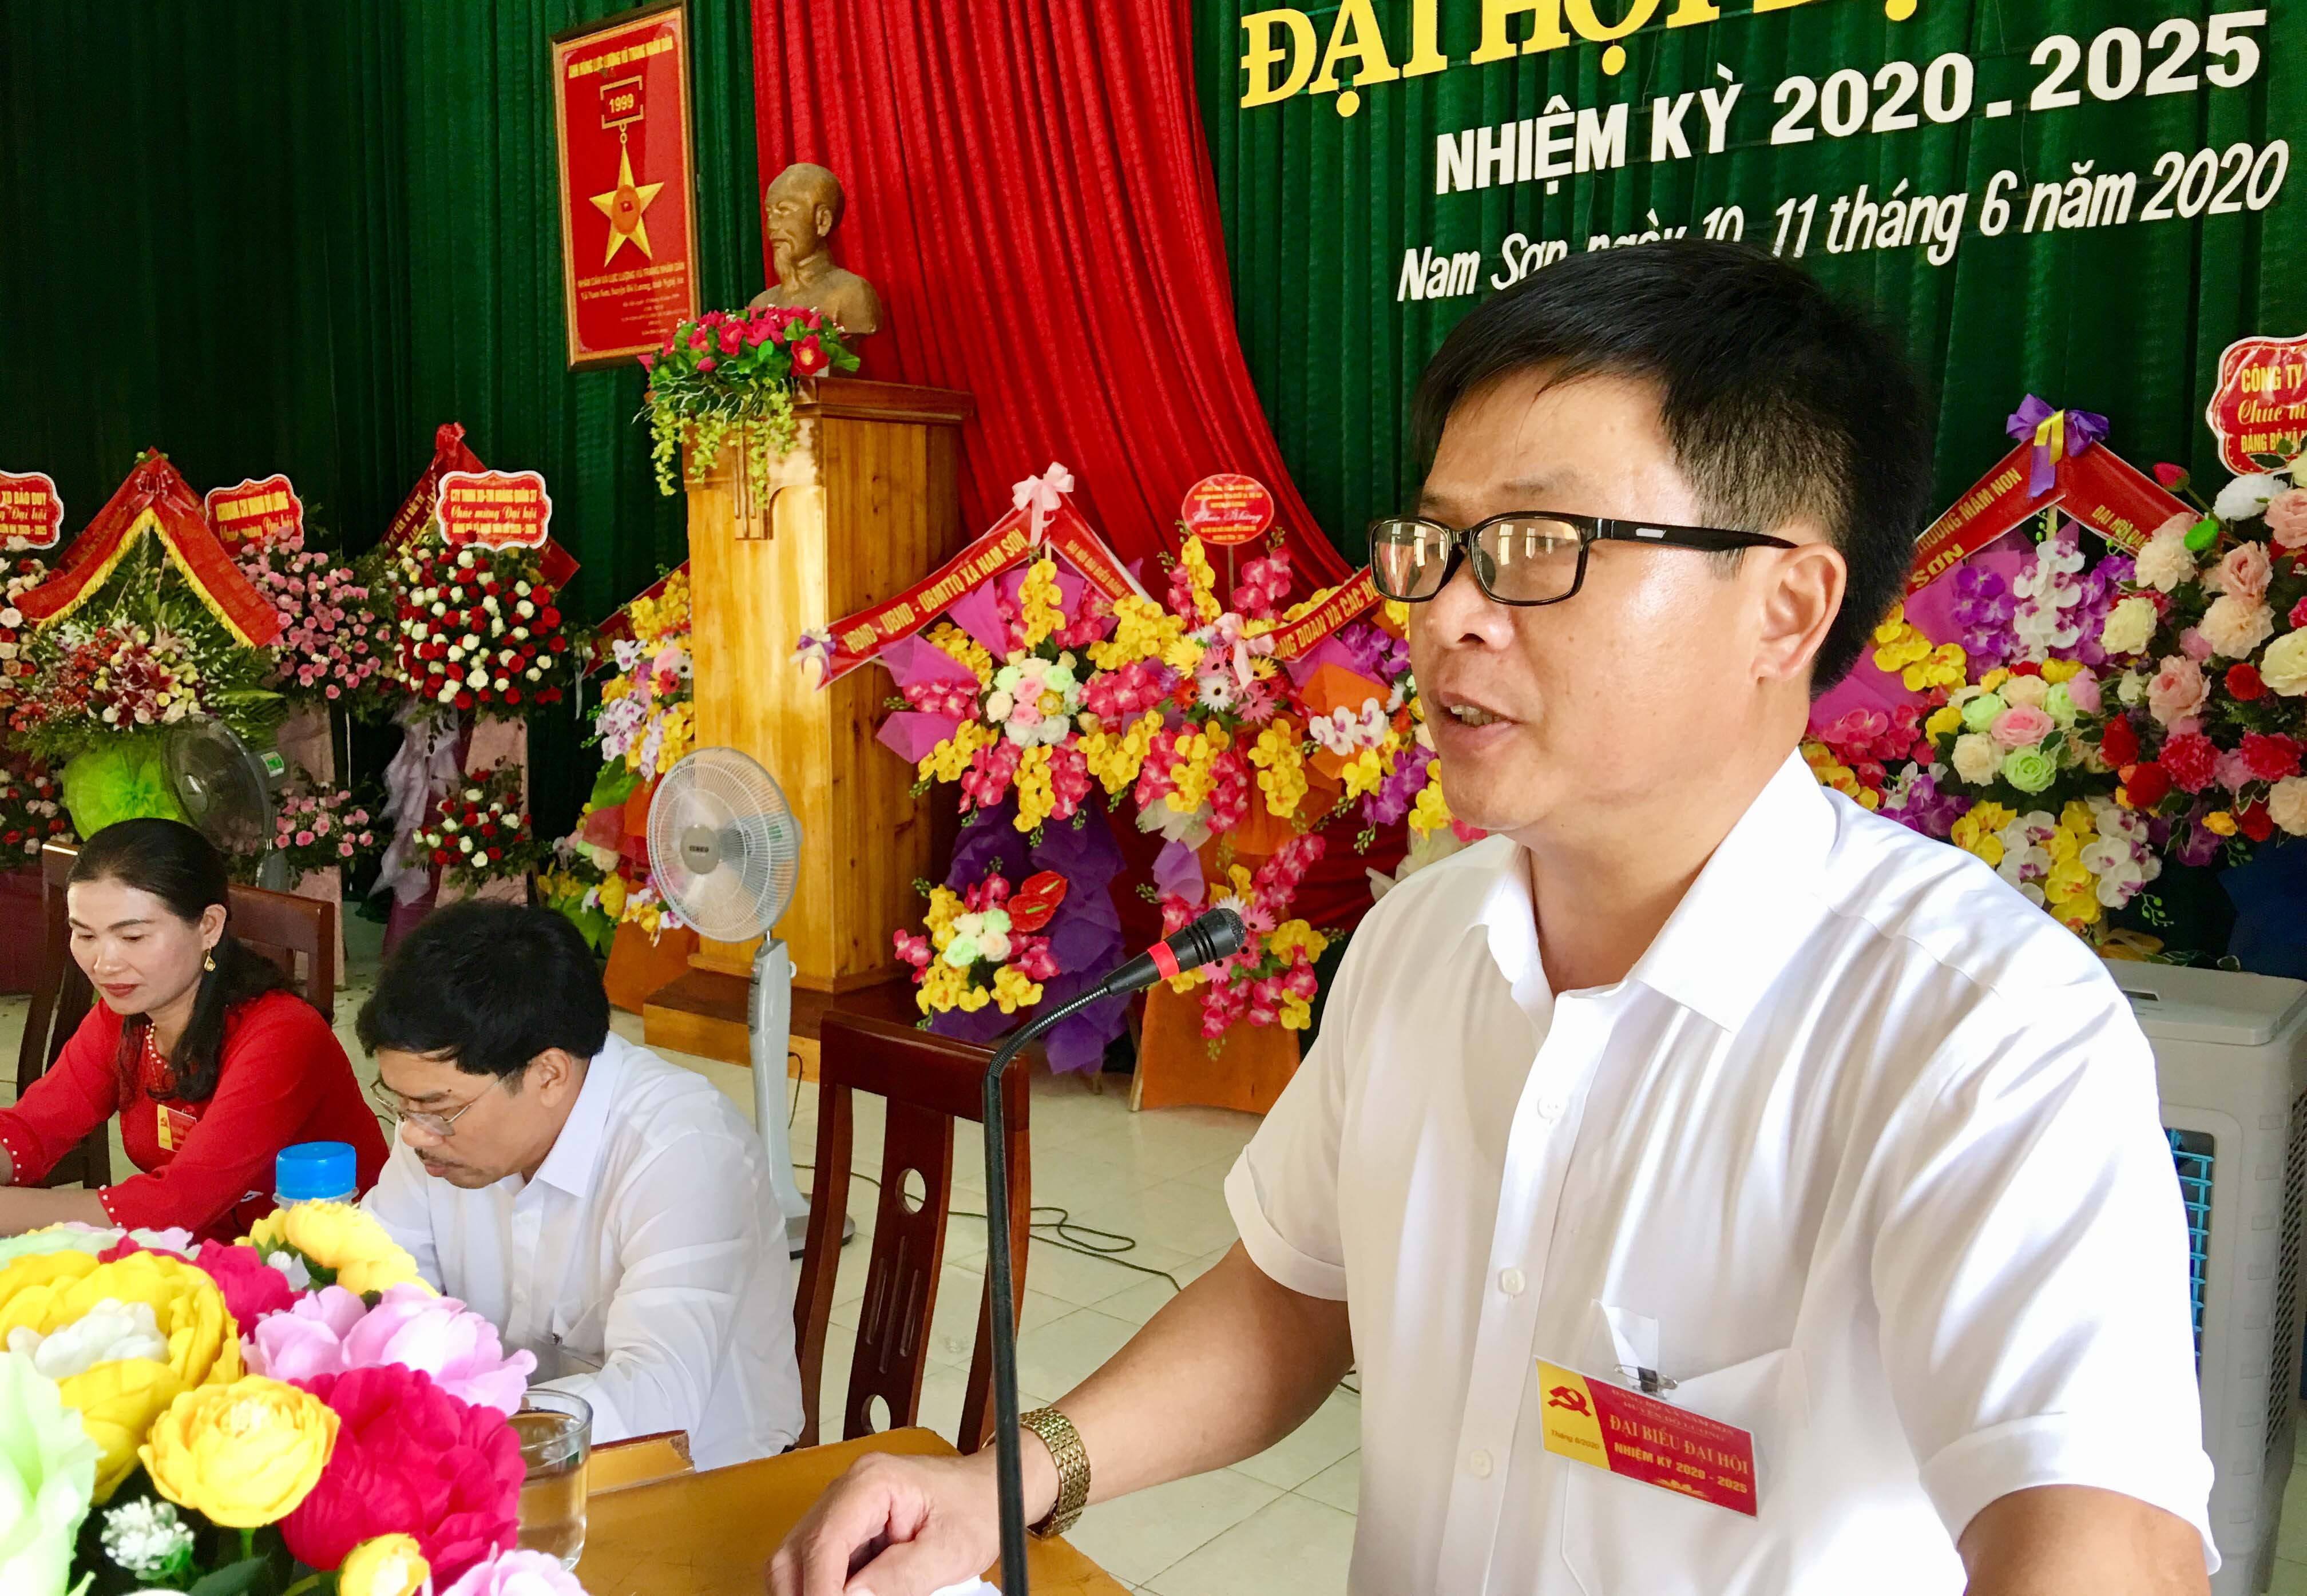 Đồng chí Trần Hữu Đức- Bí thư Đảng bộ xã Nam Sơn trình bày báo cáo chính trị tại đại hội.